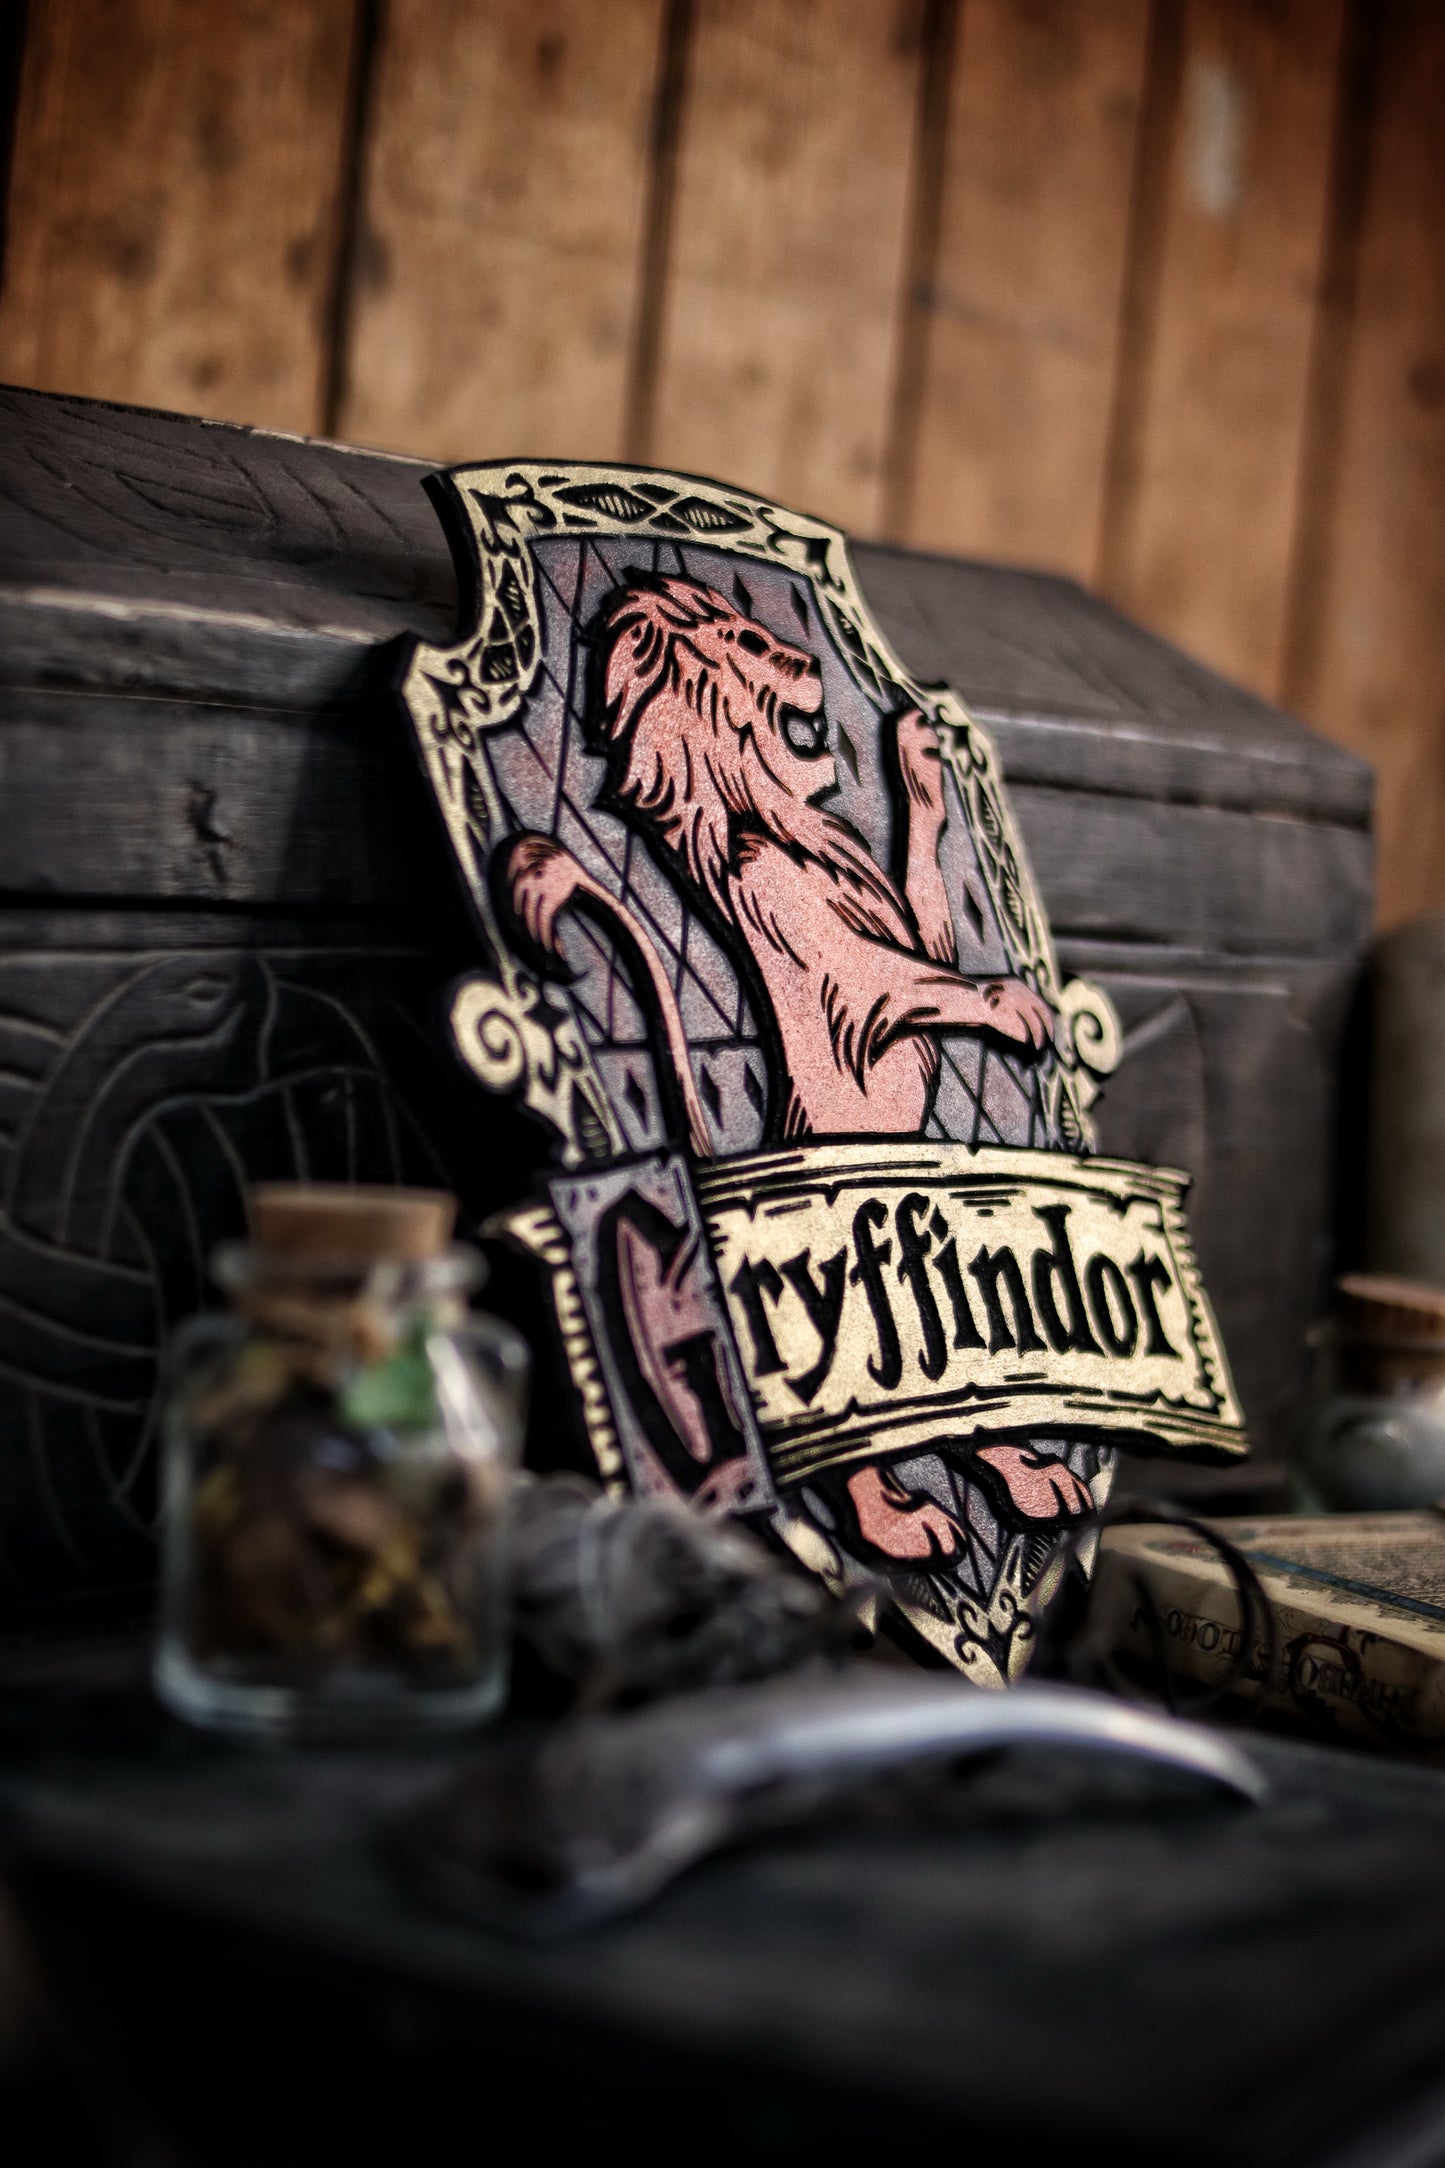 Gryffindor Wood Sign